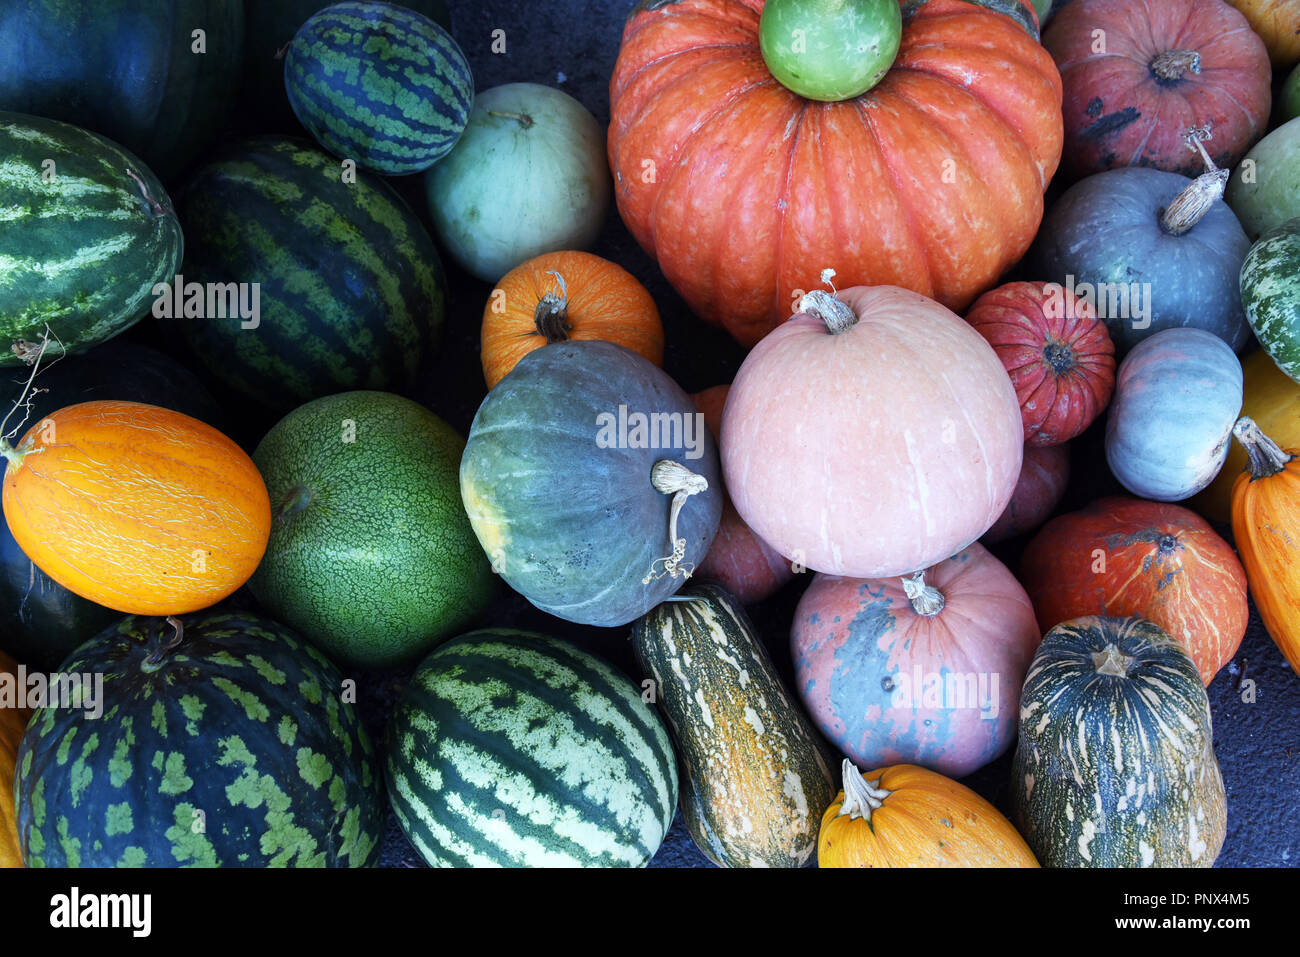 Melonen und Kürbissen - Zusammensetzung der verschiedenen Sorten Kürbisse, Melonen und Wassermelonen. Stockfoto